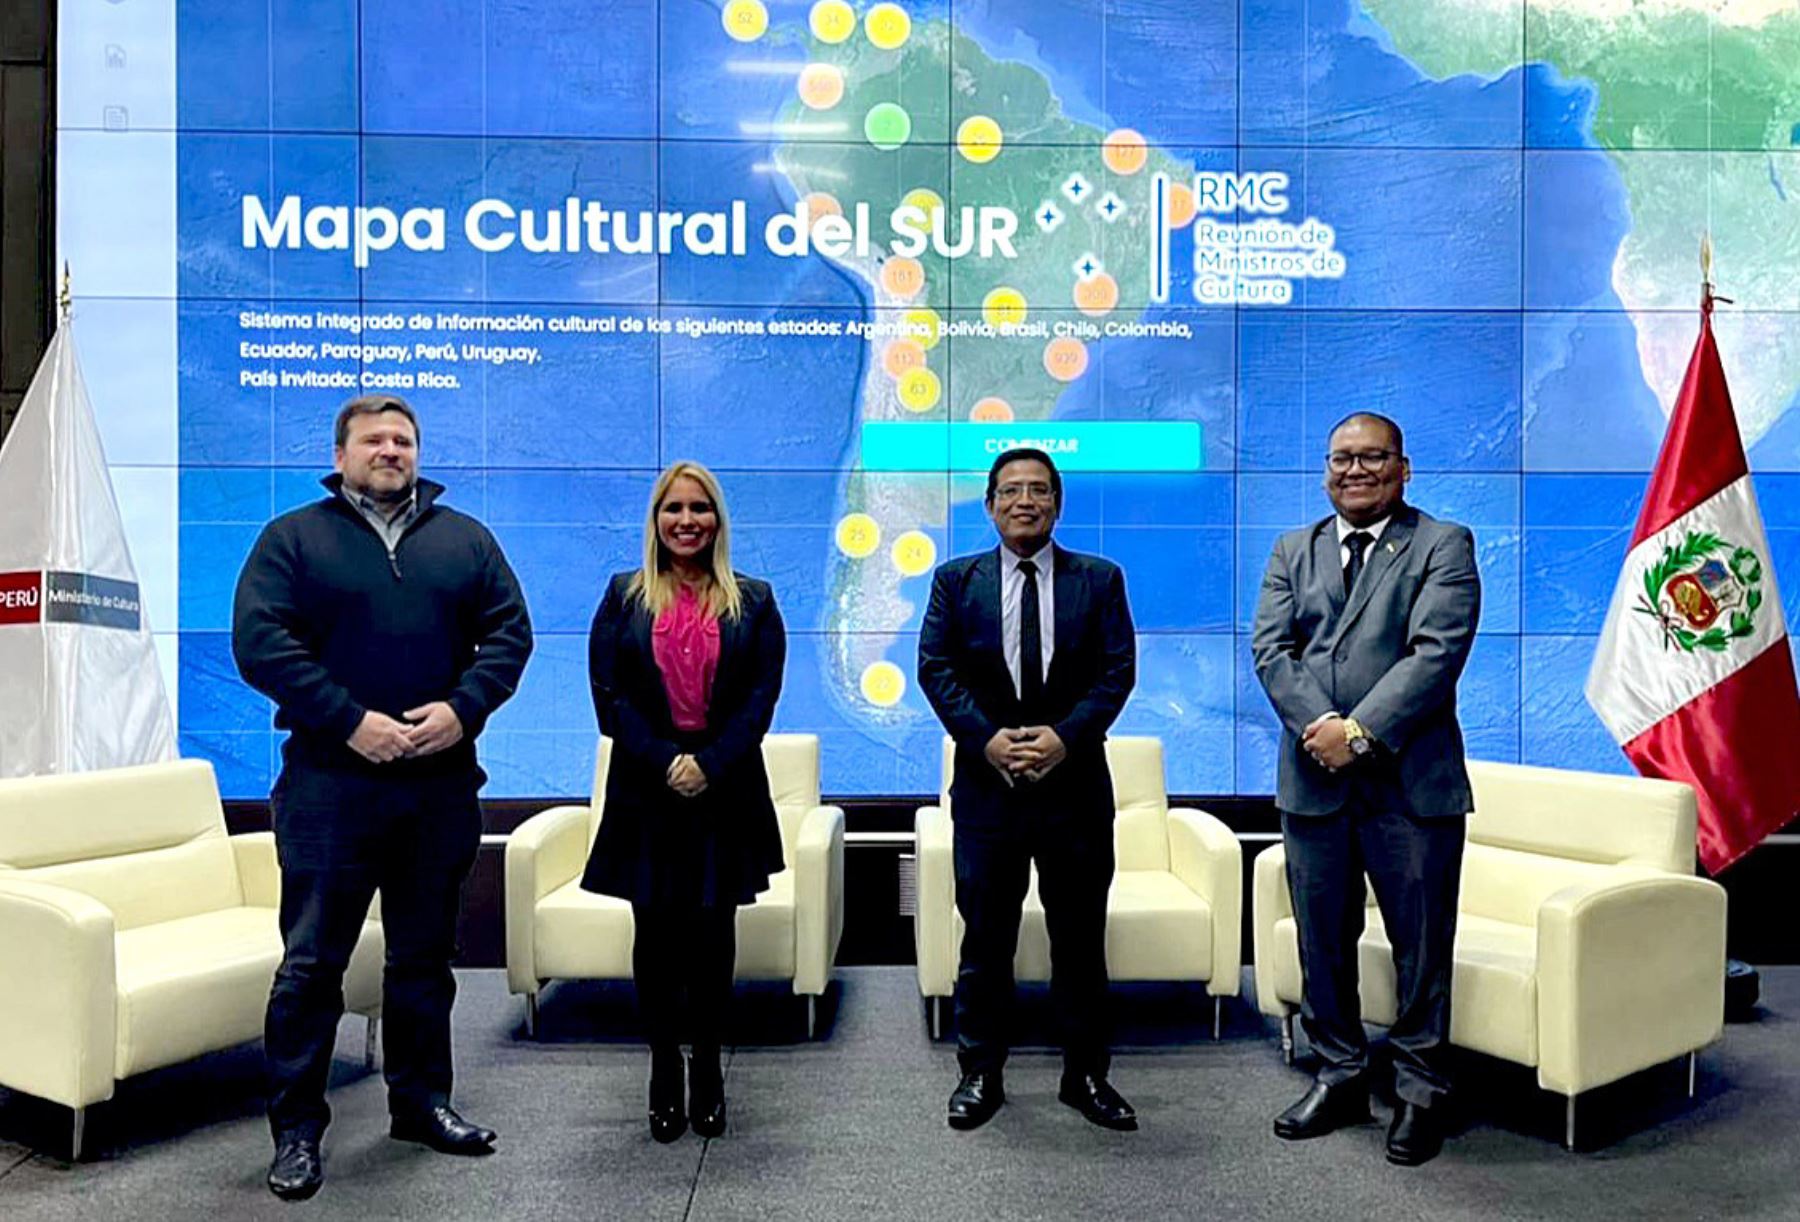 Ministerio de Cultura presentó mapa cultural del Mercosur en Paraguay